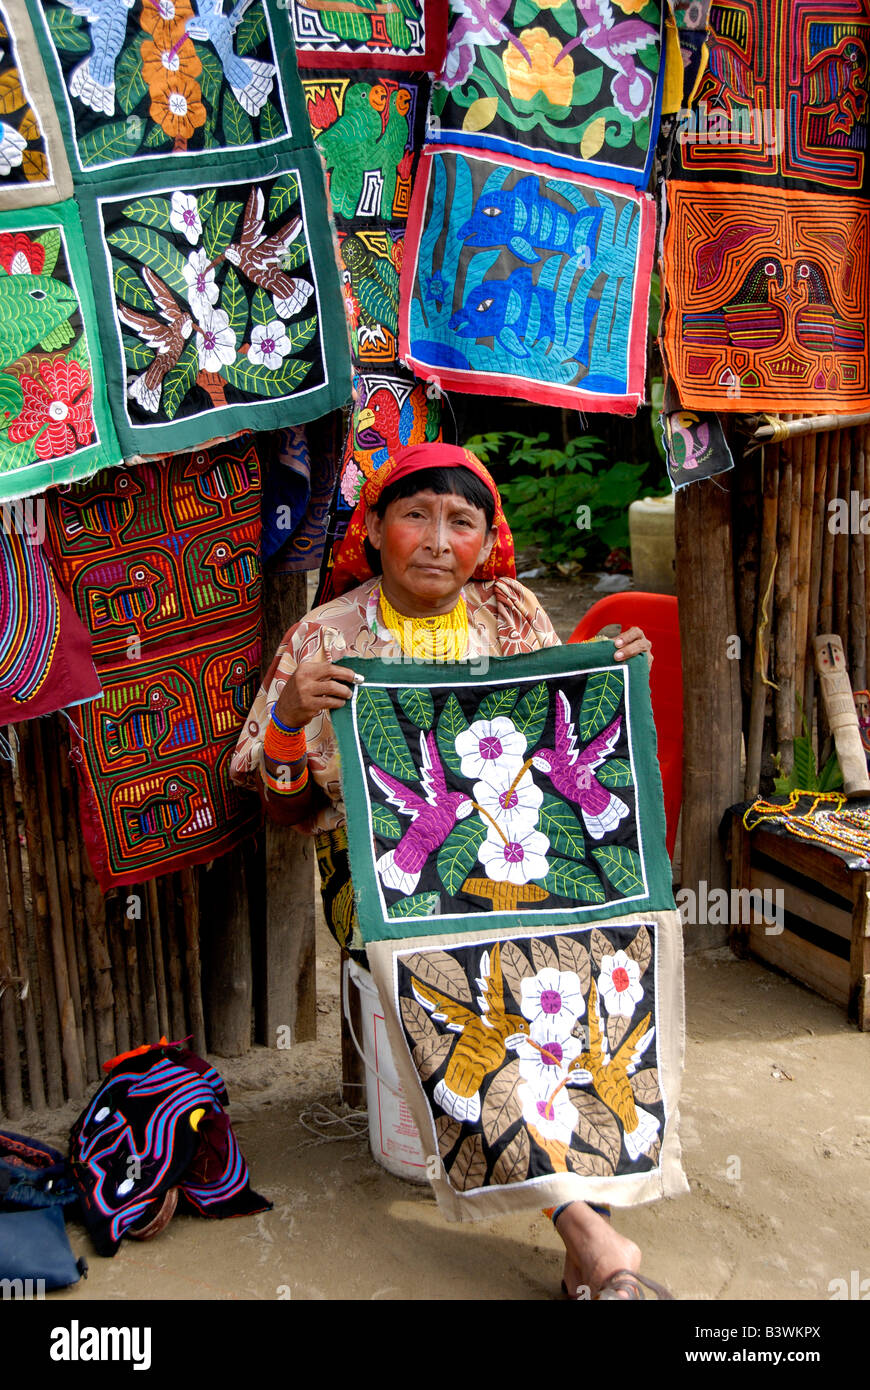 América Central, Panamá, las Islas de San Blas. Mujer indígena Kuna en traje tradicional delante de coloridas molas cosida a mano. Foto de stock